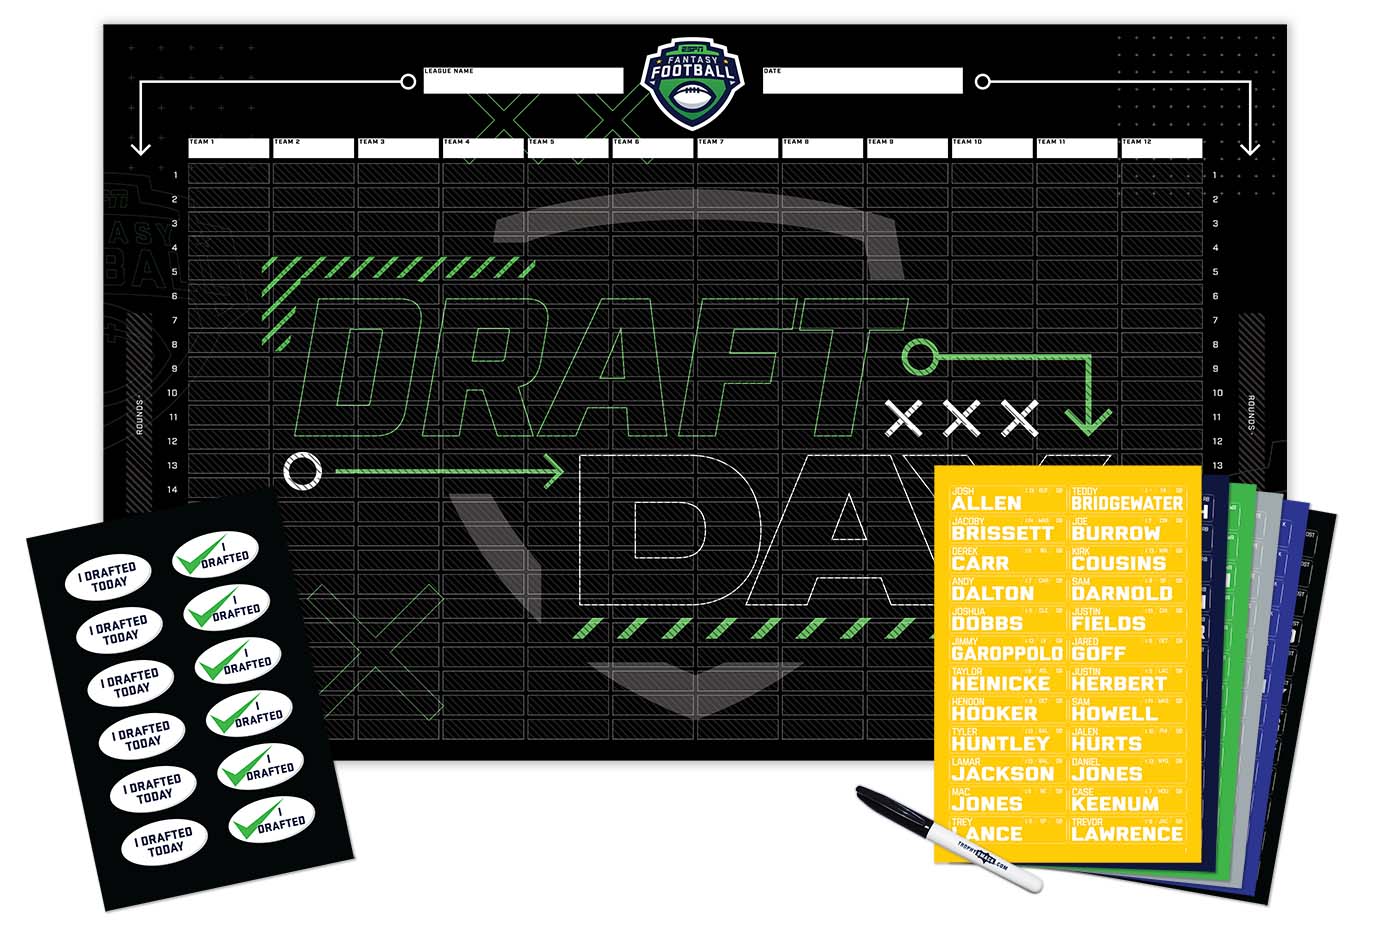 2023 NFL Superstar Fantasy Football Draft Board Kit- 12, 10, 8 team